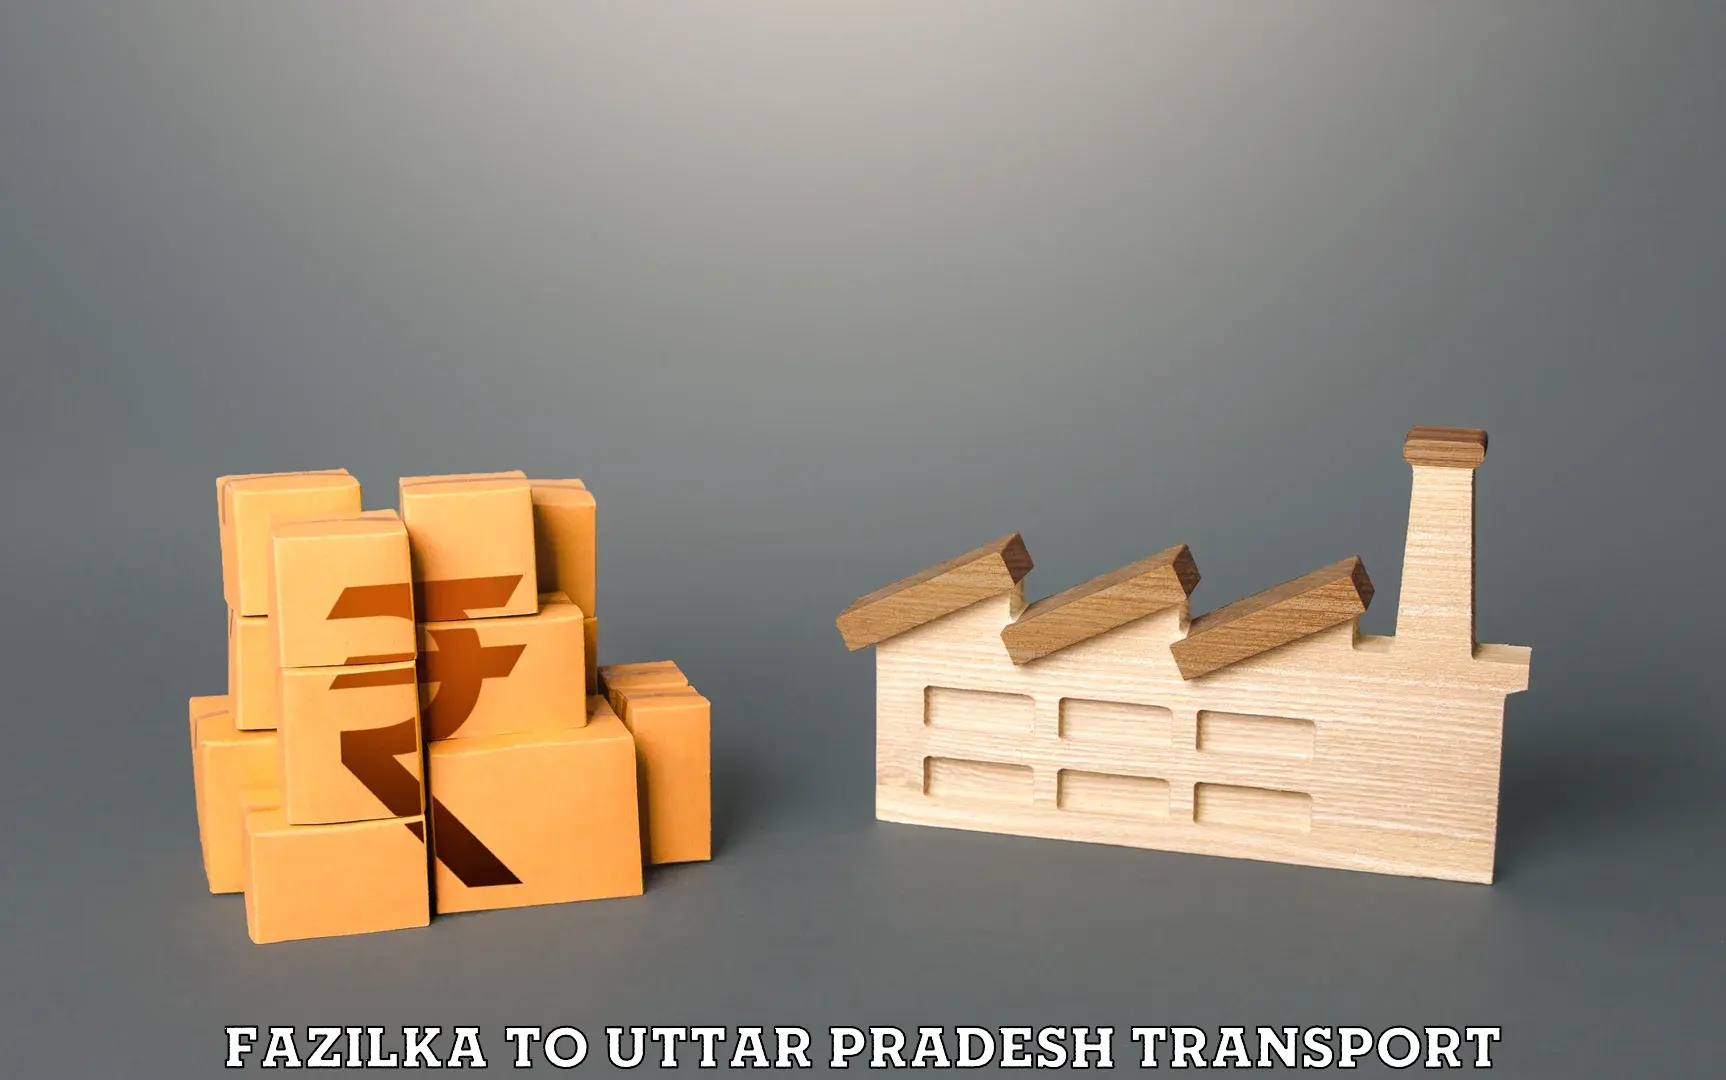 Part load transport service in India Fazilka to Hamirpur Uttar Pradesh